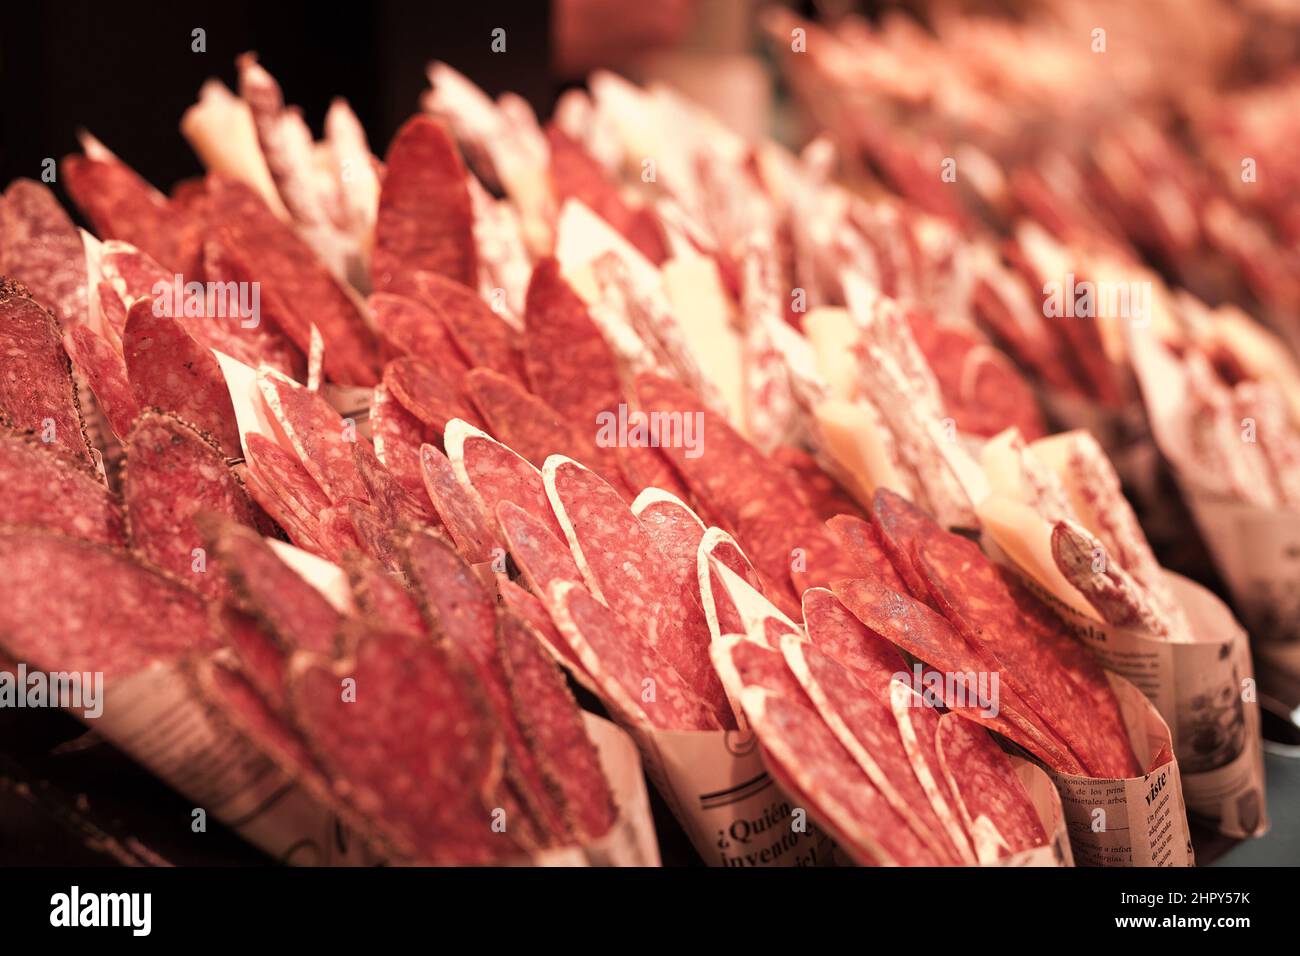 Wurst, Salami, Fuet in Bastelpapiertüte am Marktschalter Stockfoto